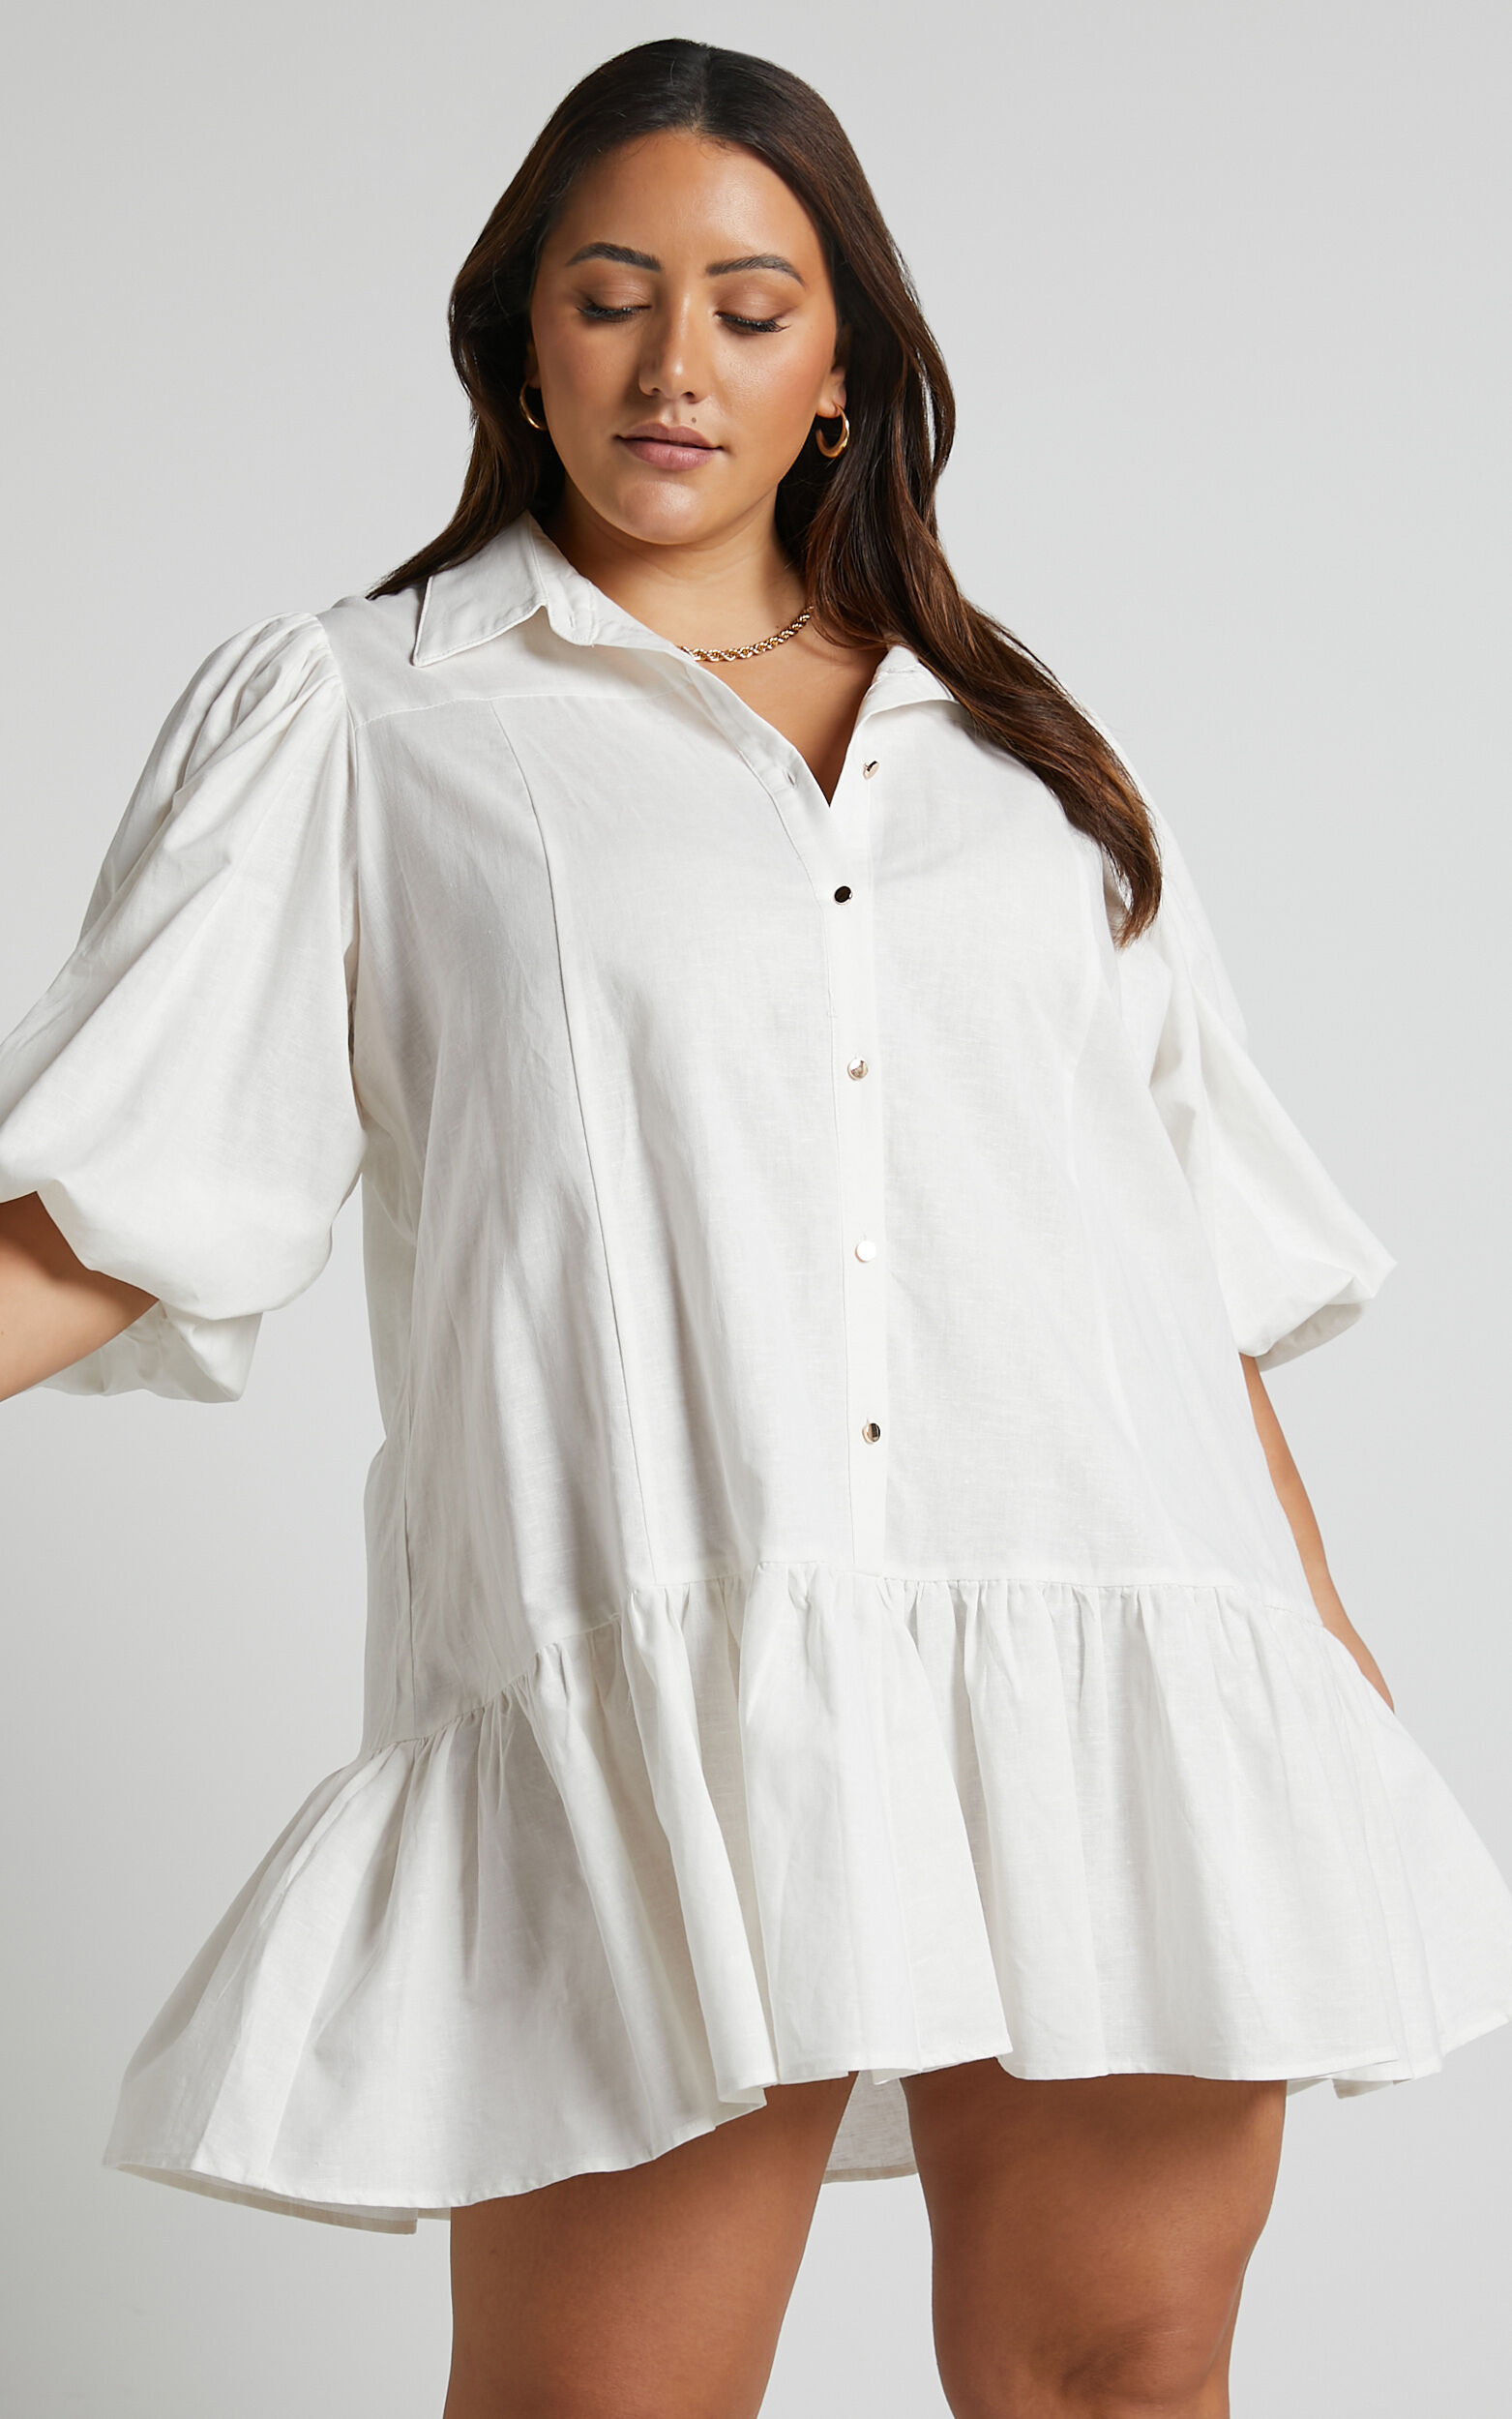 Louis Vuitton Trumpet Print Bib Shirt Dress White. Size 36